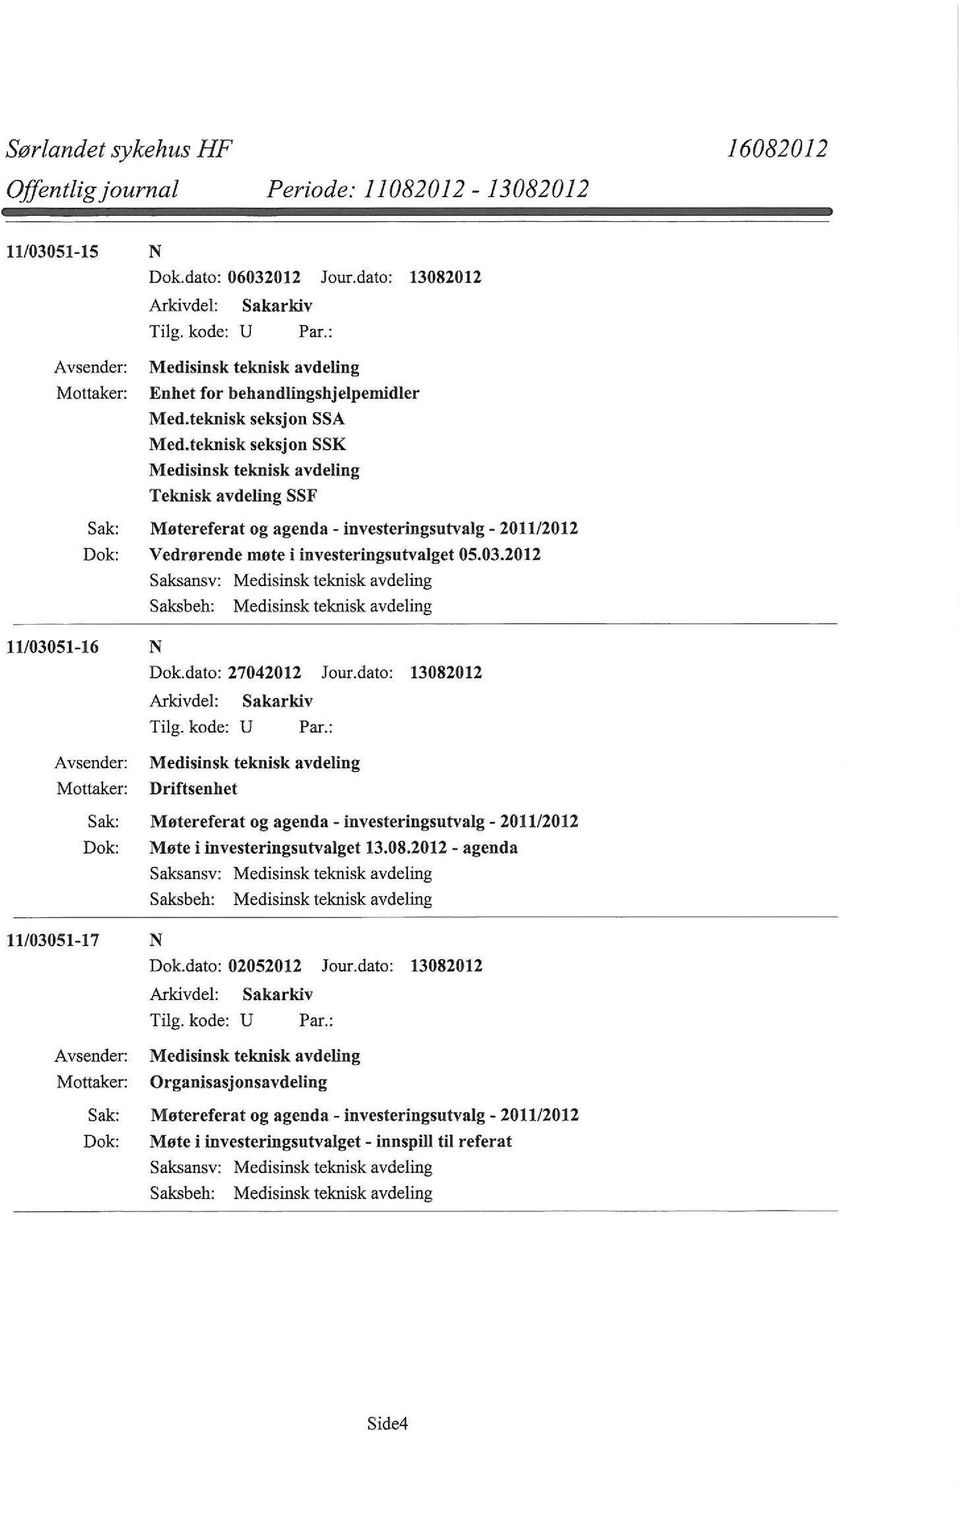 2012 Saksansv: Medisinsk teknisk avdeling Saksbeh: Medisinsk teknisk avdeling 11/03051-16 N Dok.dato: 27042012 Jour.